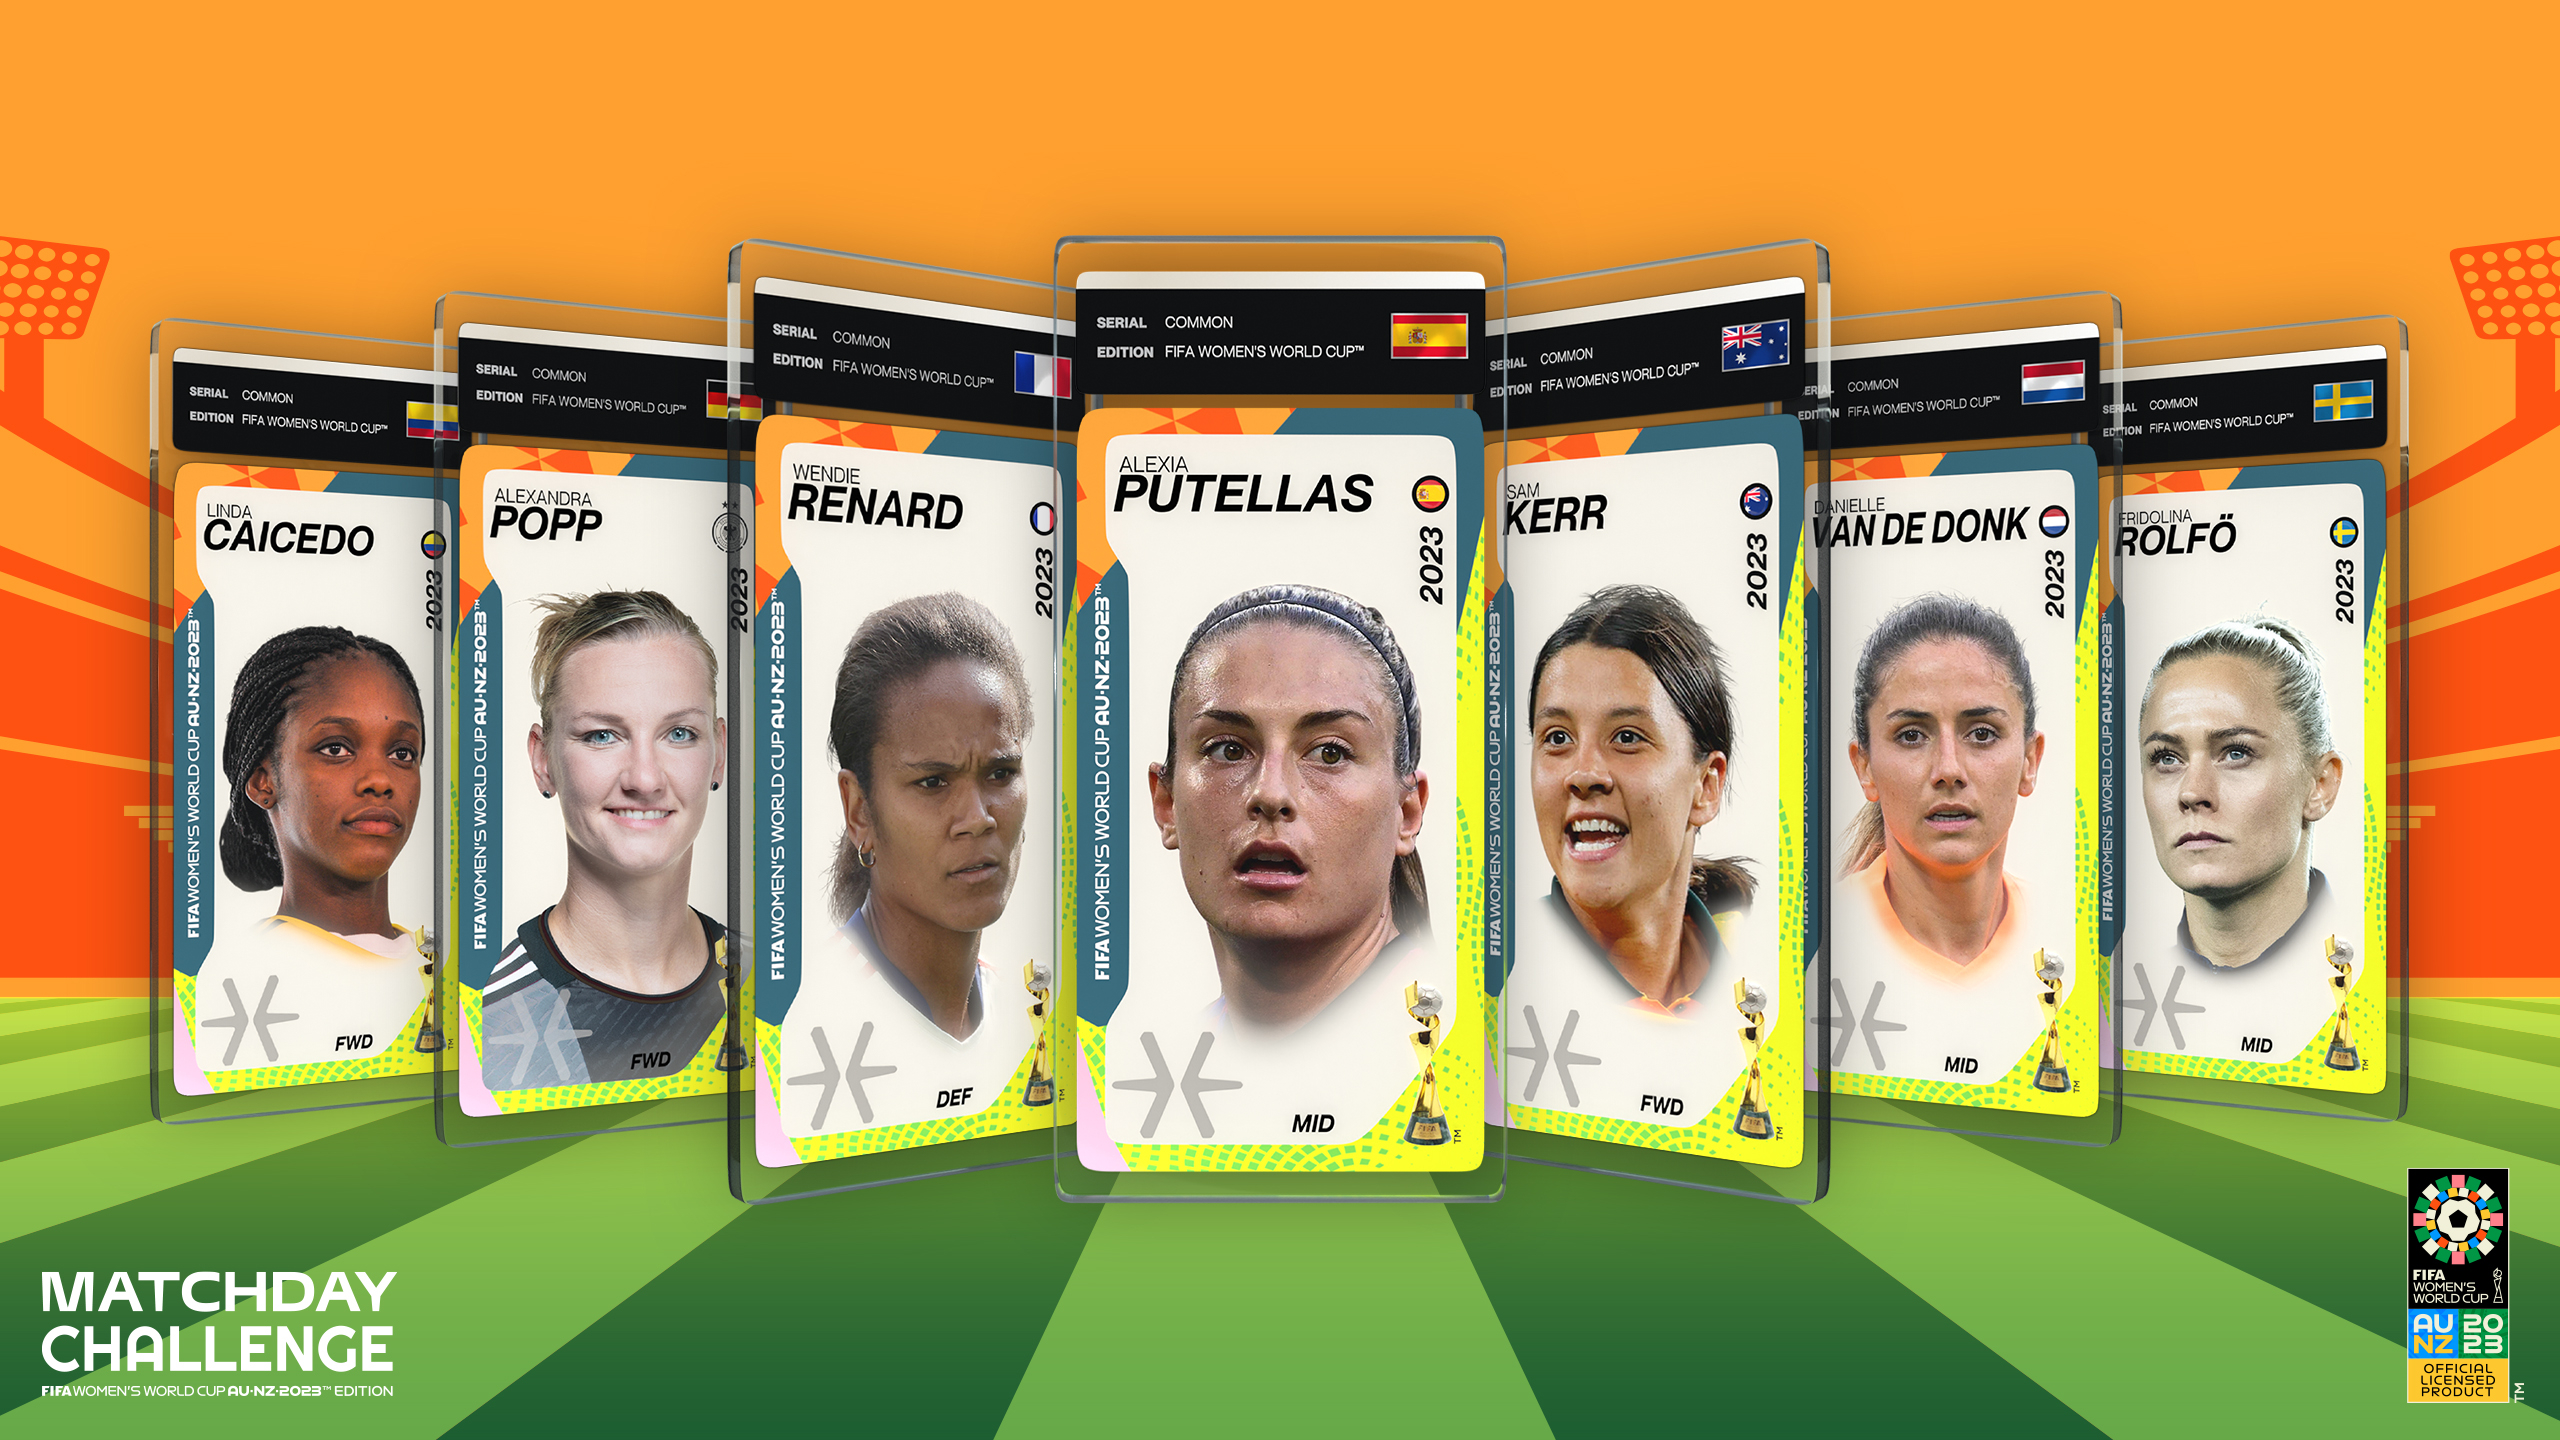 Matchday Lança Videogame de Futebol Matchday Challenge: FIFA Women's World  Cup AU∙NZ∙2023™ Edition, um Produto Licenciado Oficialmente pela FIFA